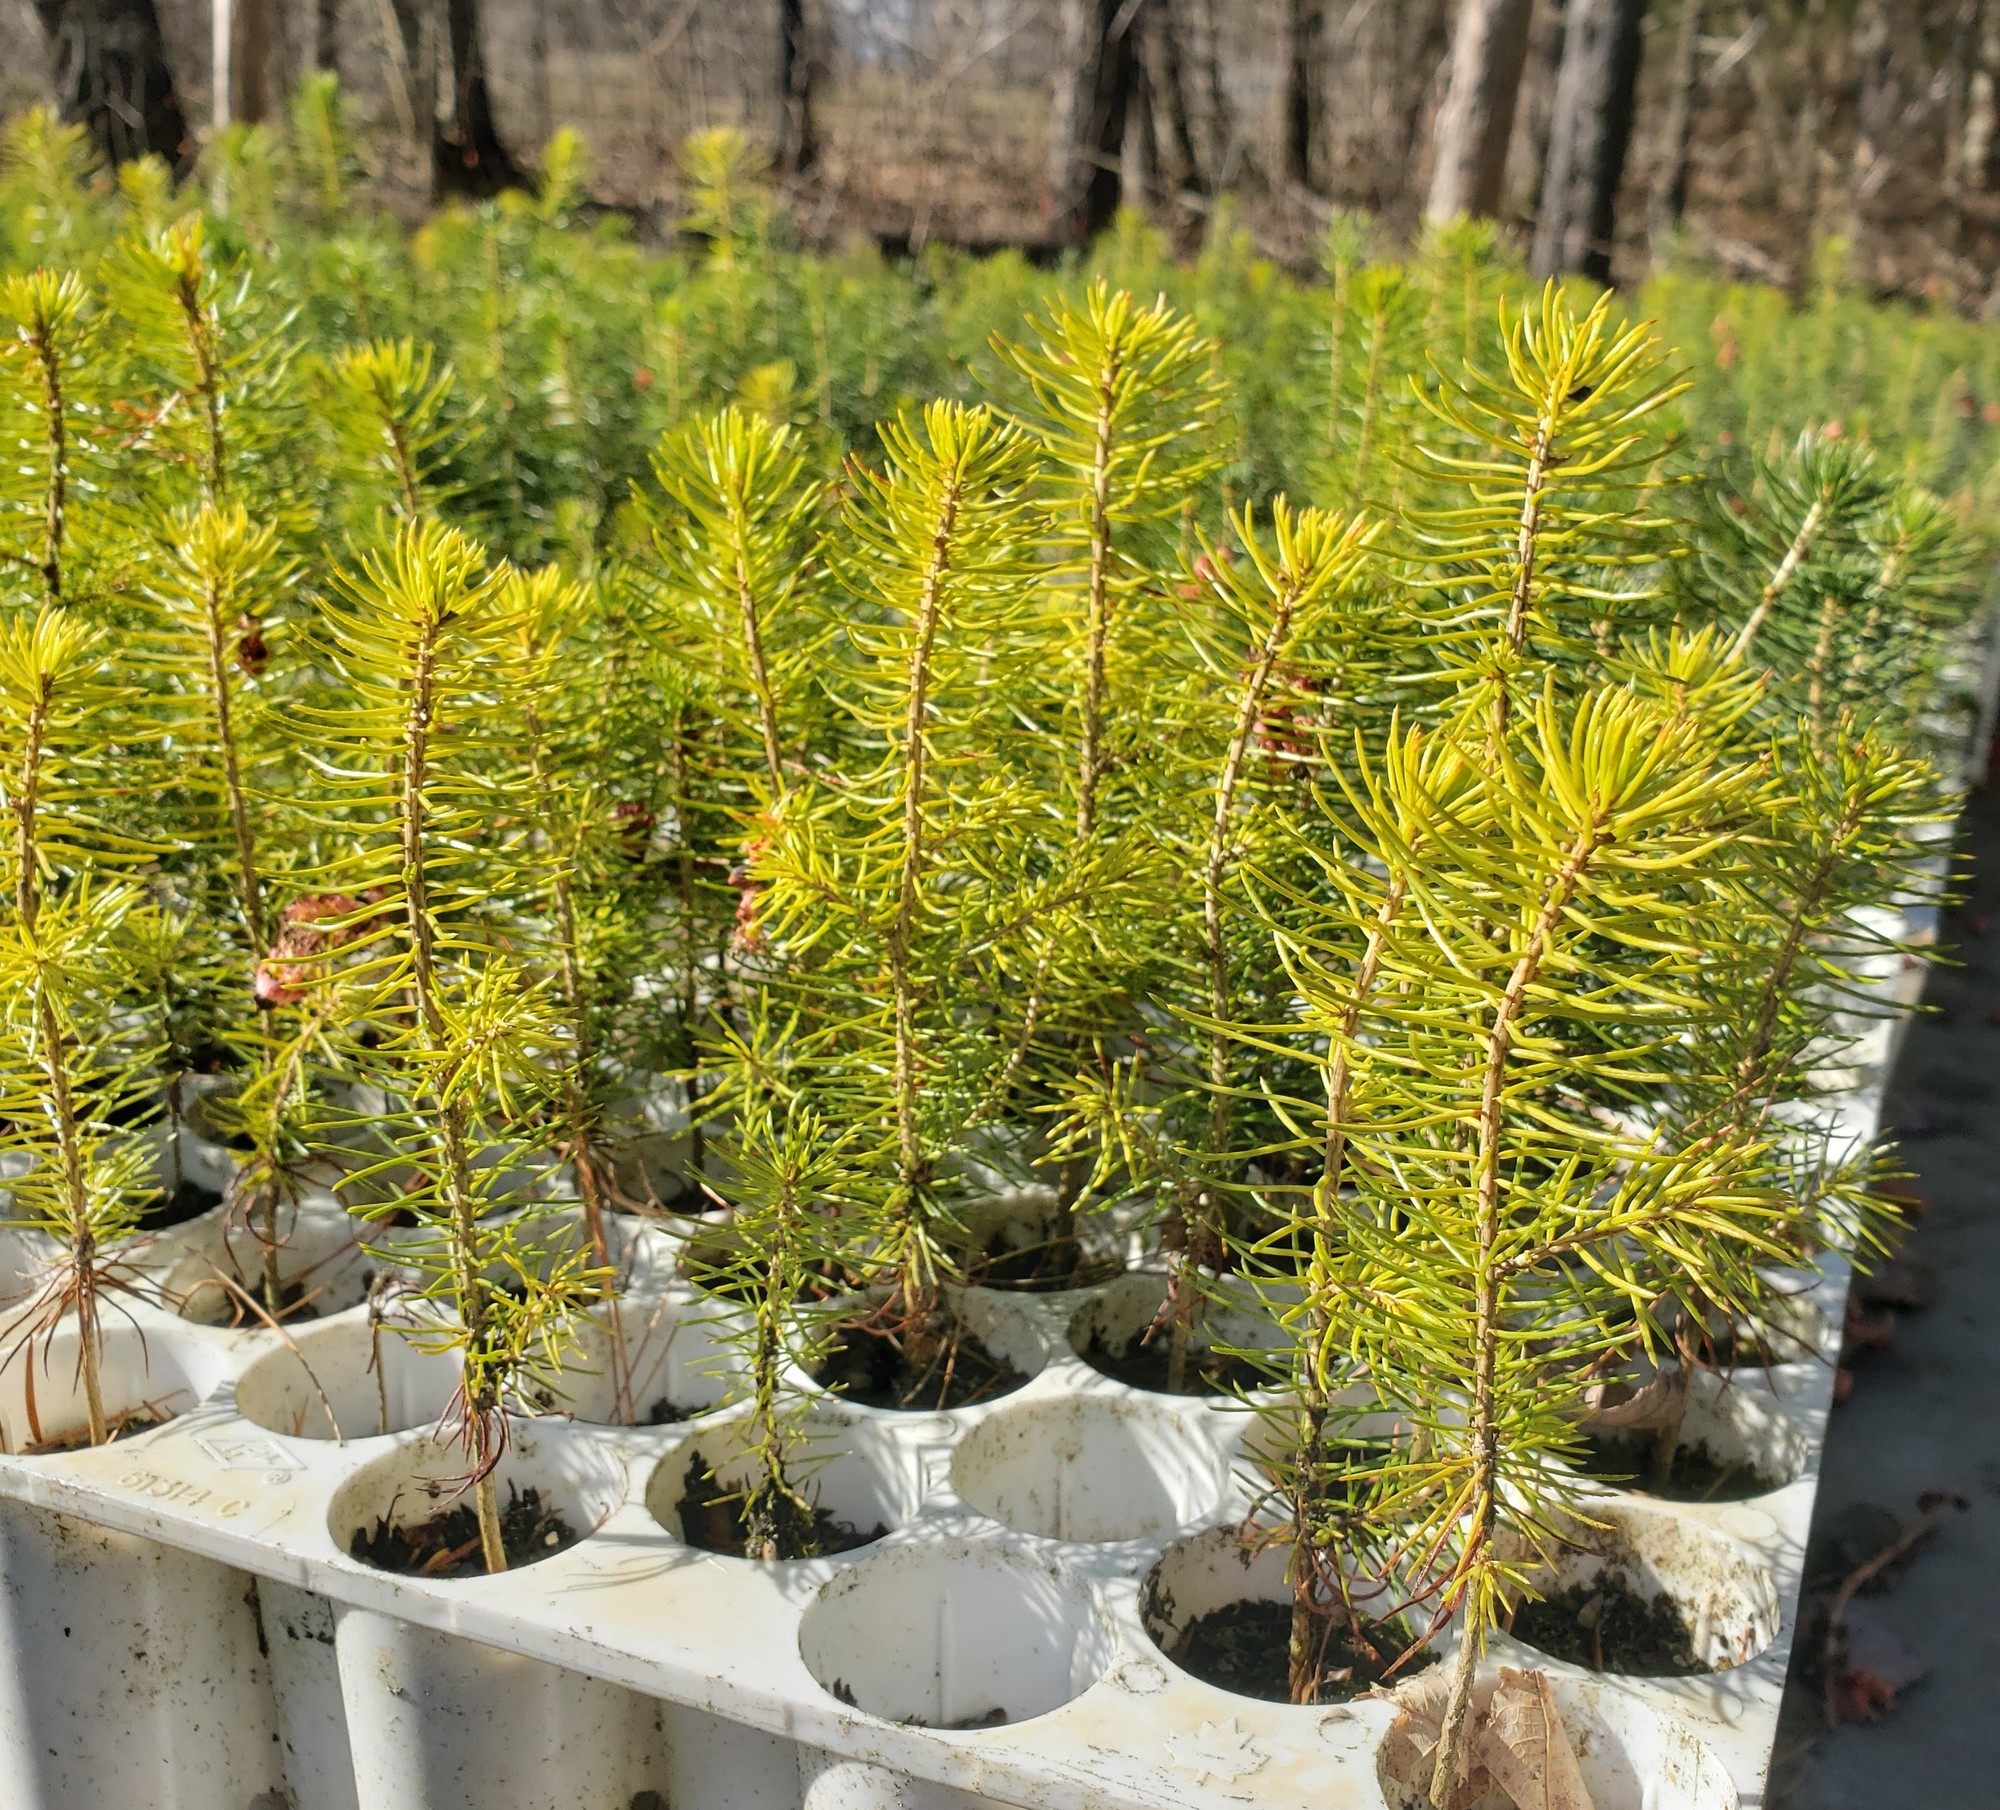 Tree seedlings at DEC's tree nursery